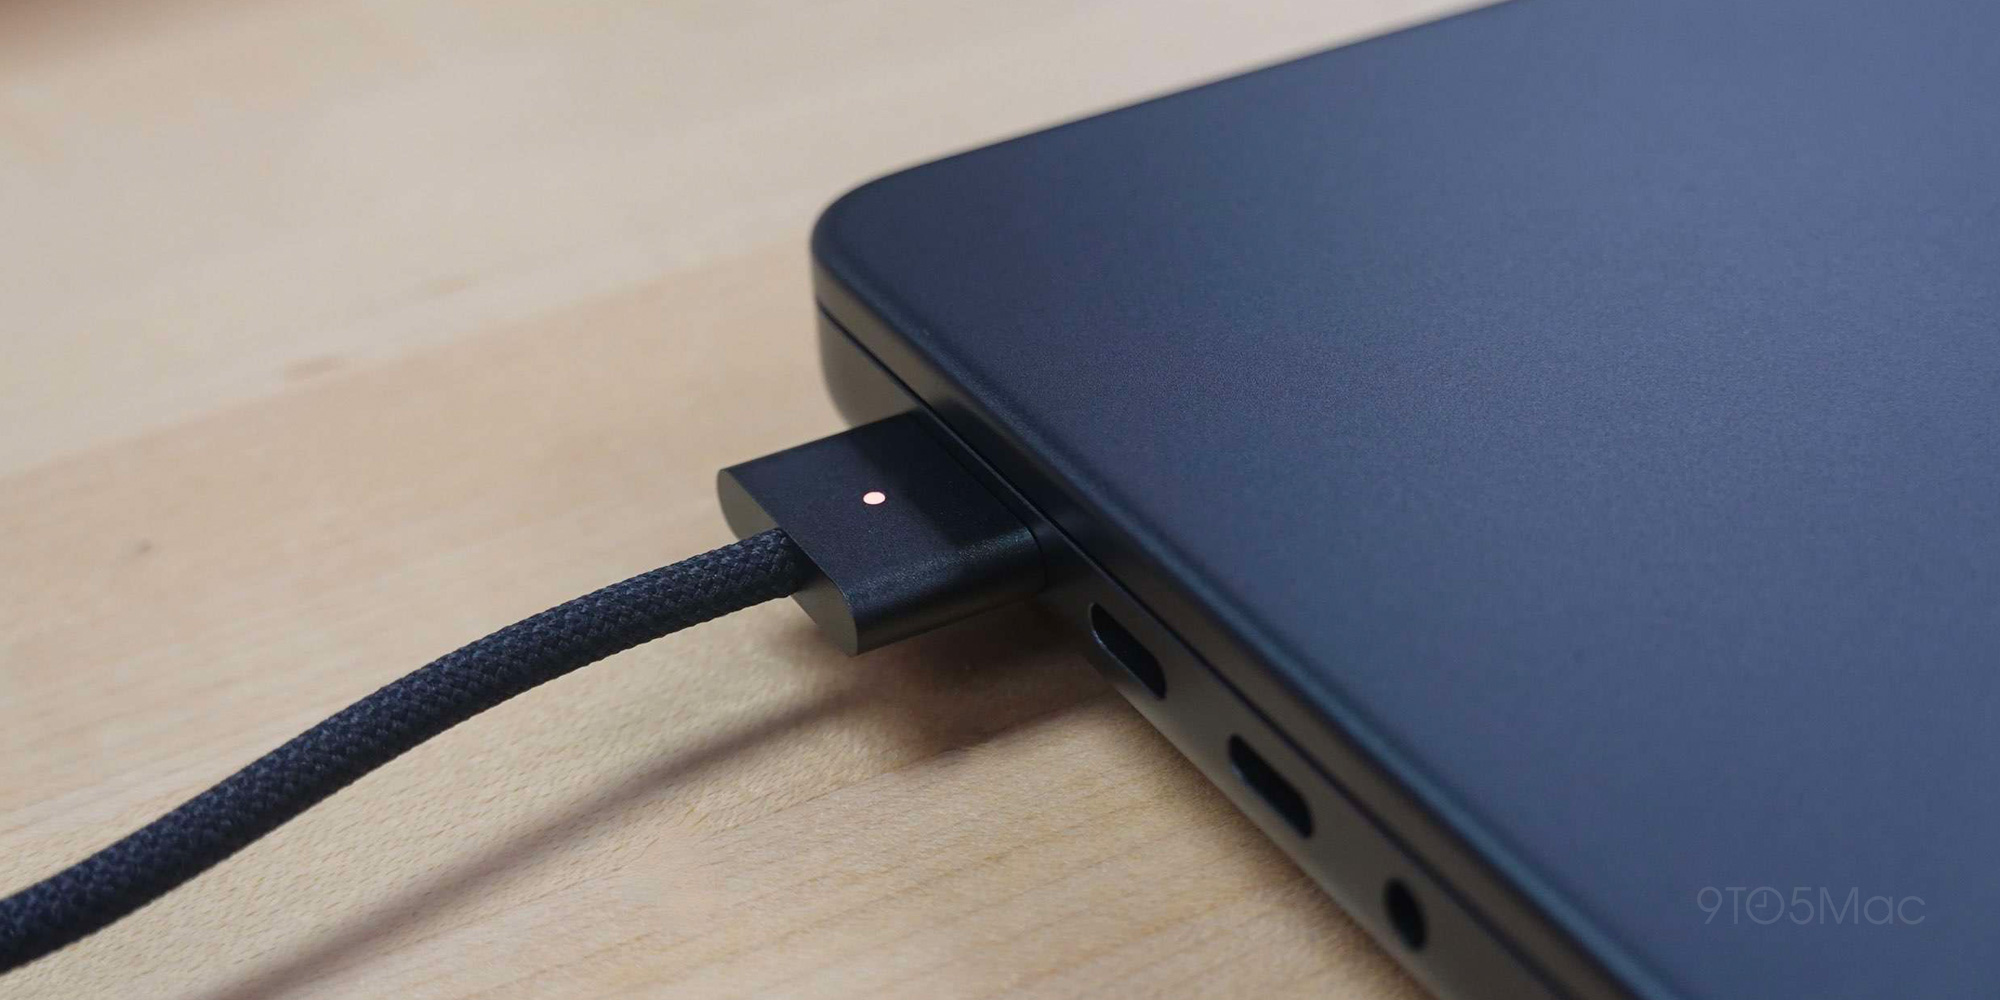 Macs can now detect liquids in USB-C ports